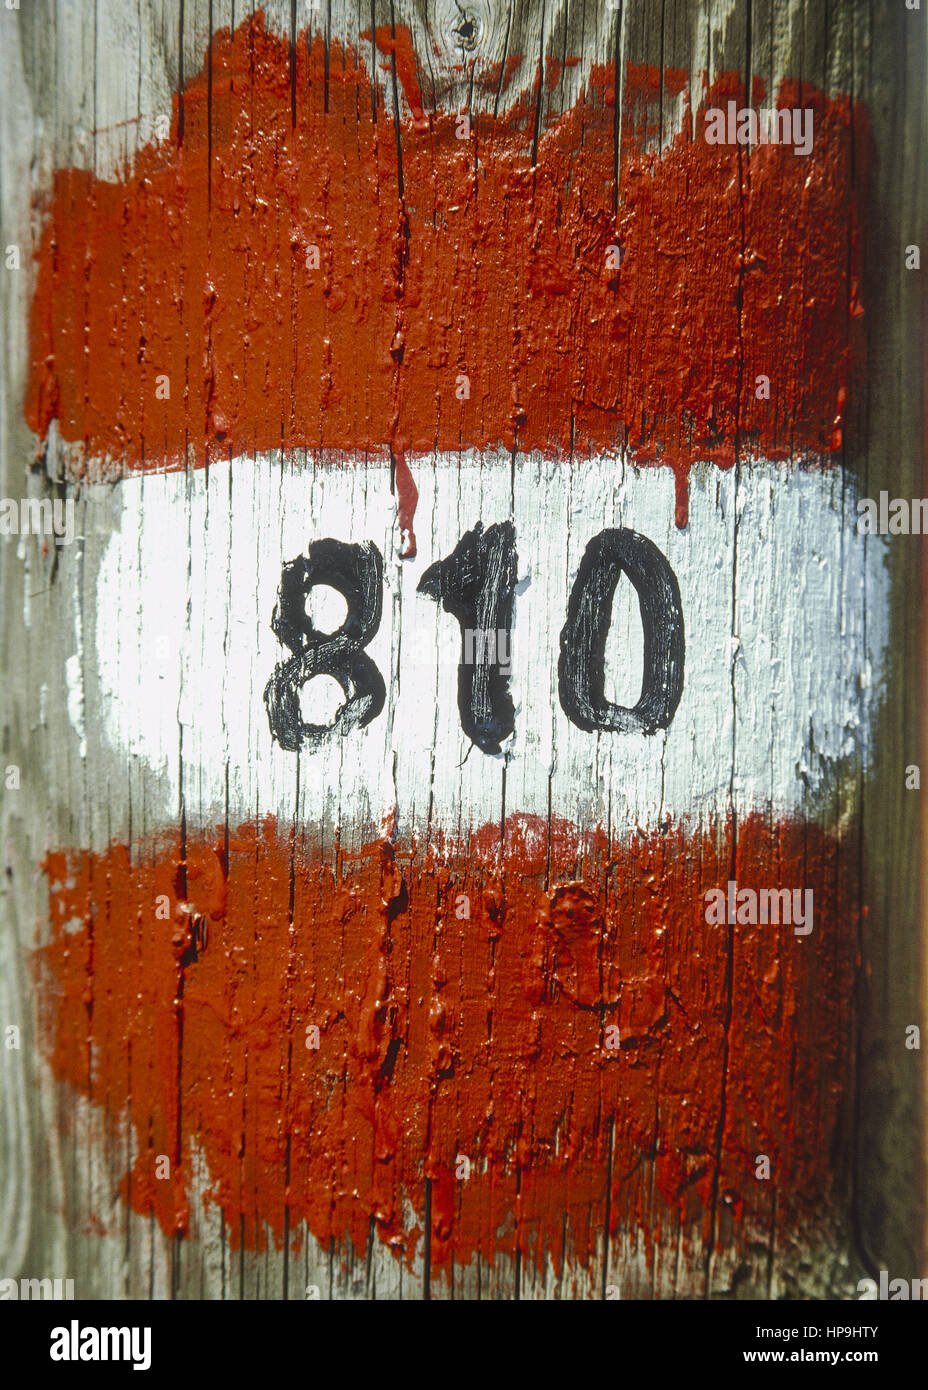 Farbmarkierung rot-weiss-rot an Holzpfosten, Zahl 810 Stock Photo